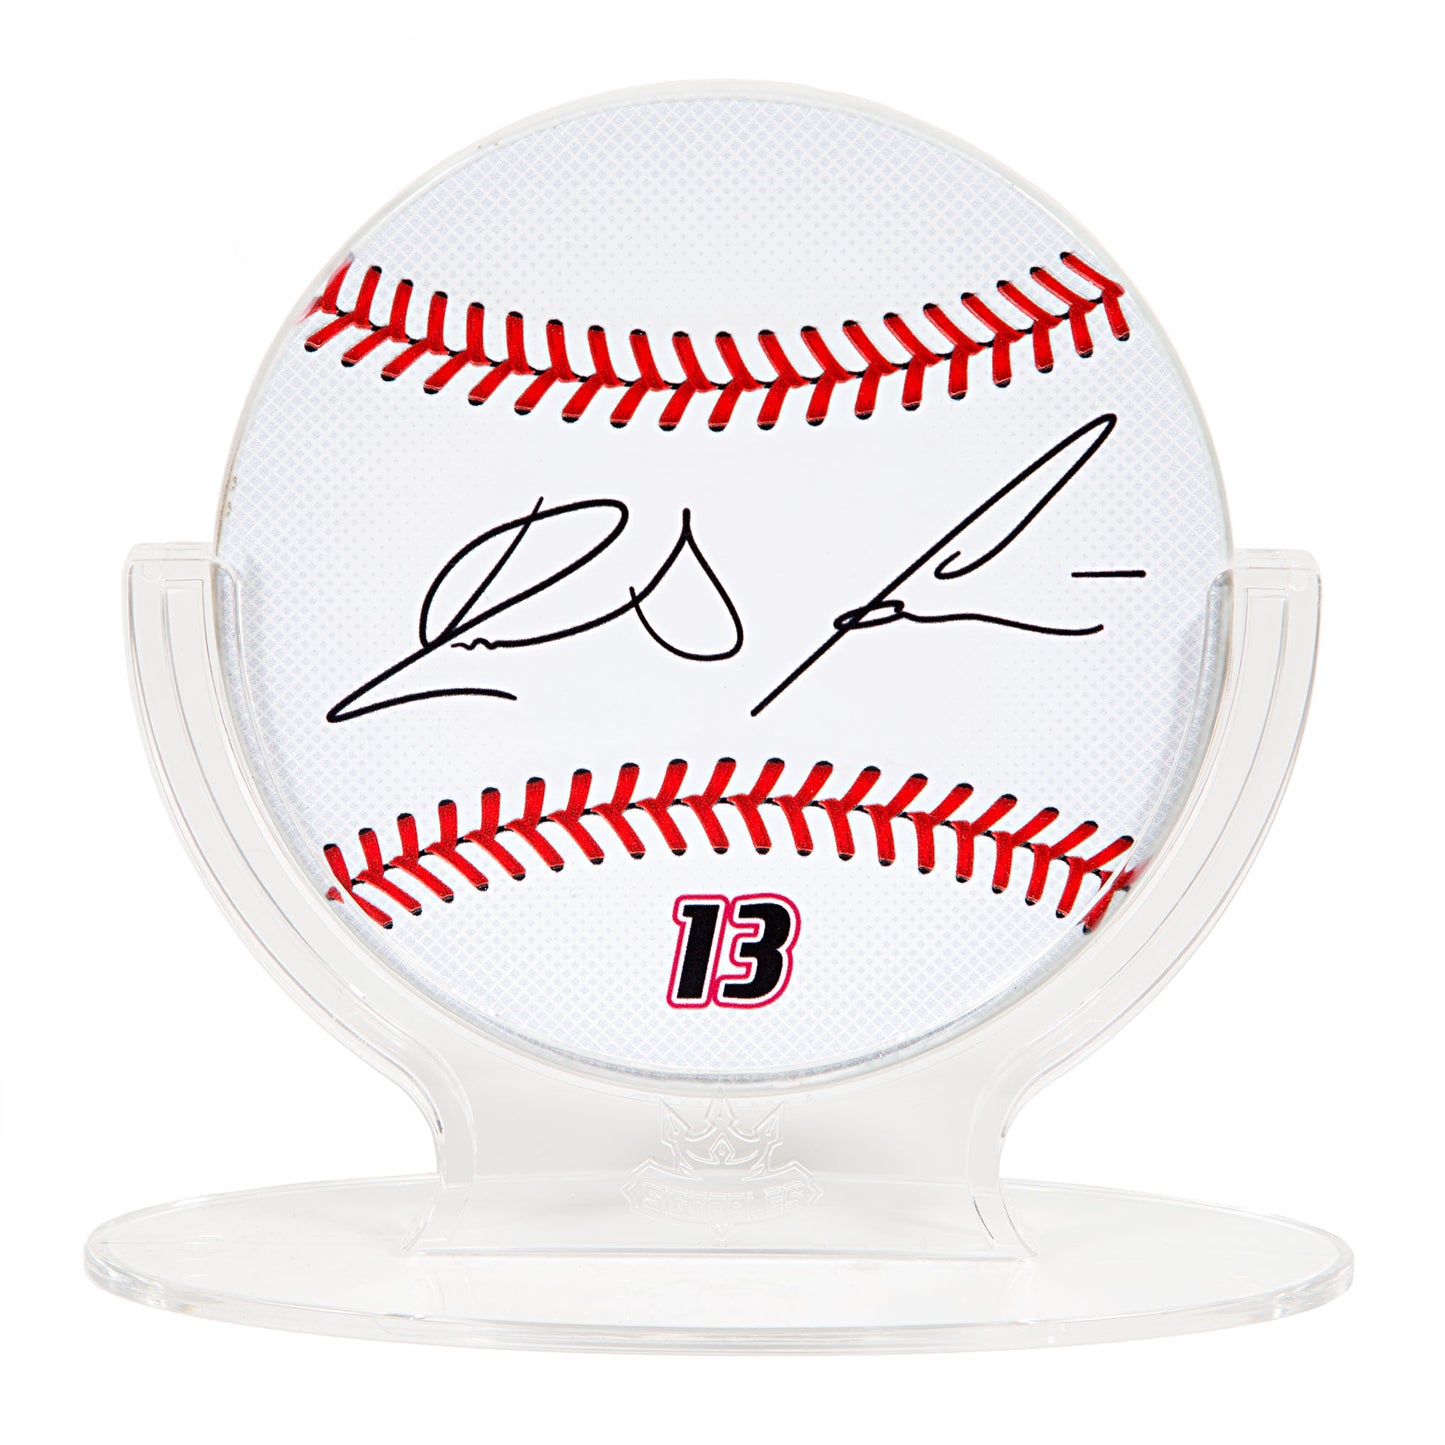 Ronald Acuña Jr. MLBPA Signables Baseball Sports Collectible Digitally Signed